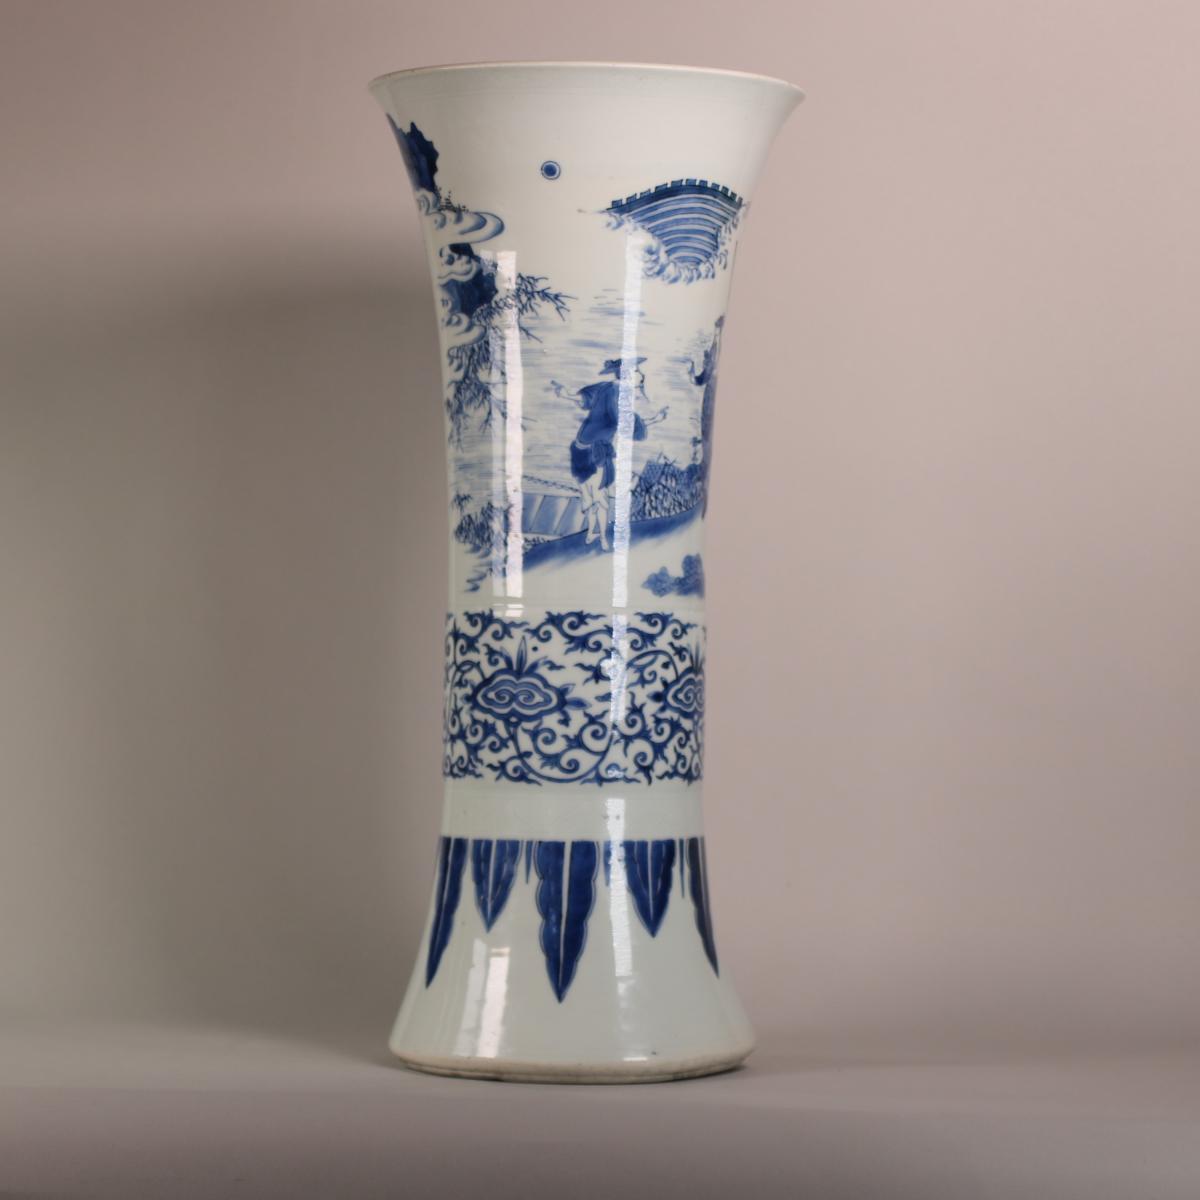 Alternative side of Transitional beaker vase